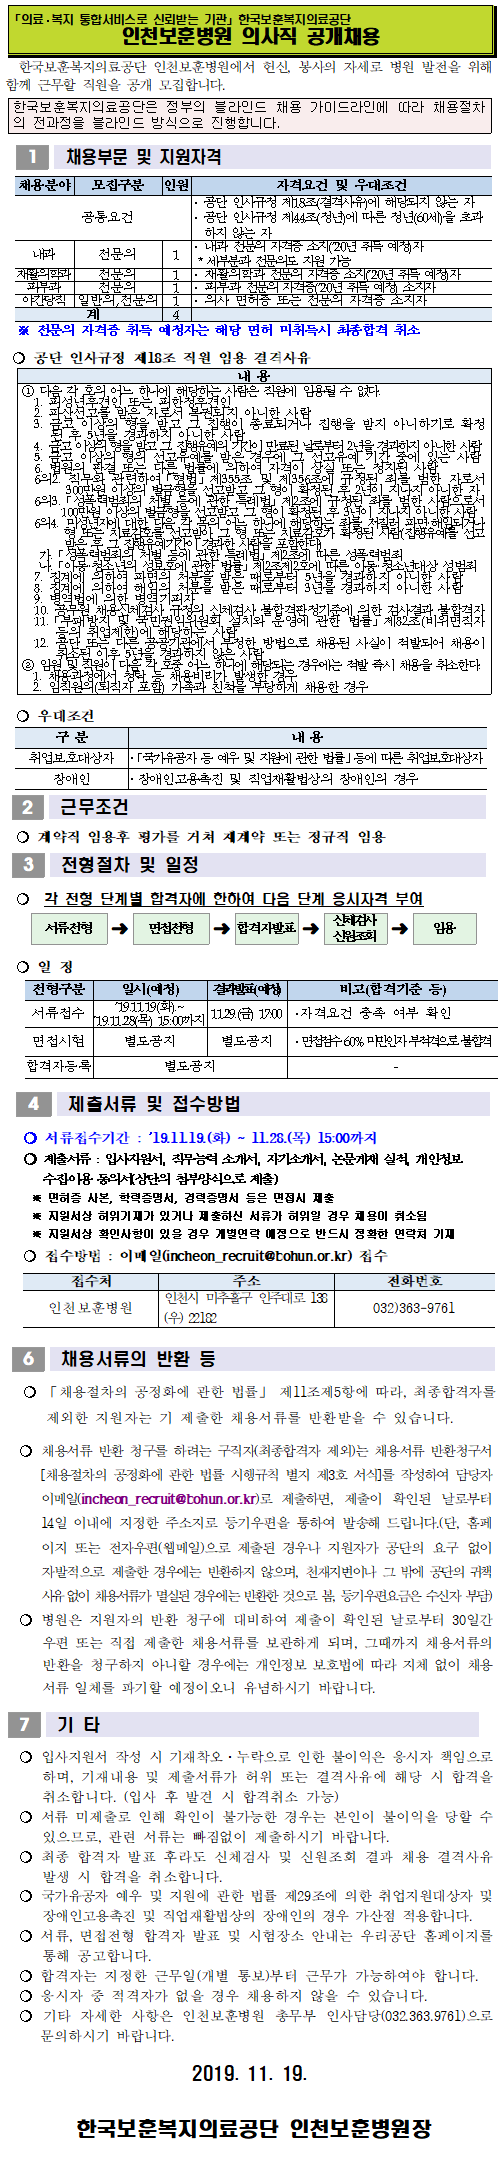 [채용][한국보훈복지의료공단] [인천보훈병원] 의사직 공개채용 공고